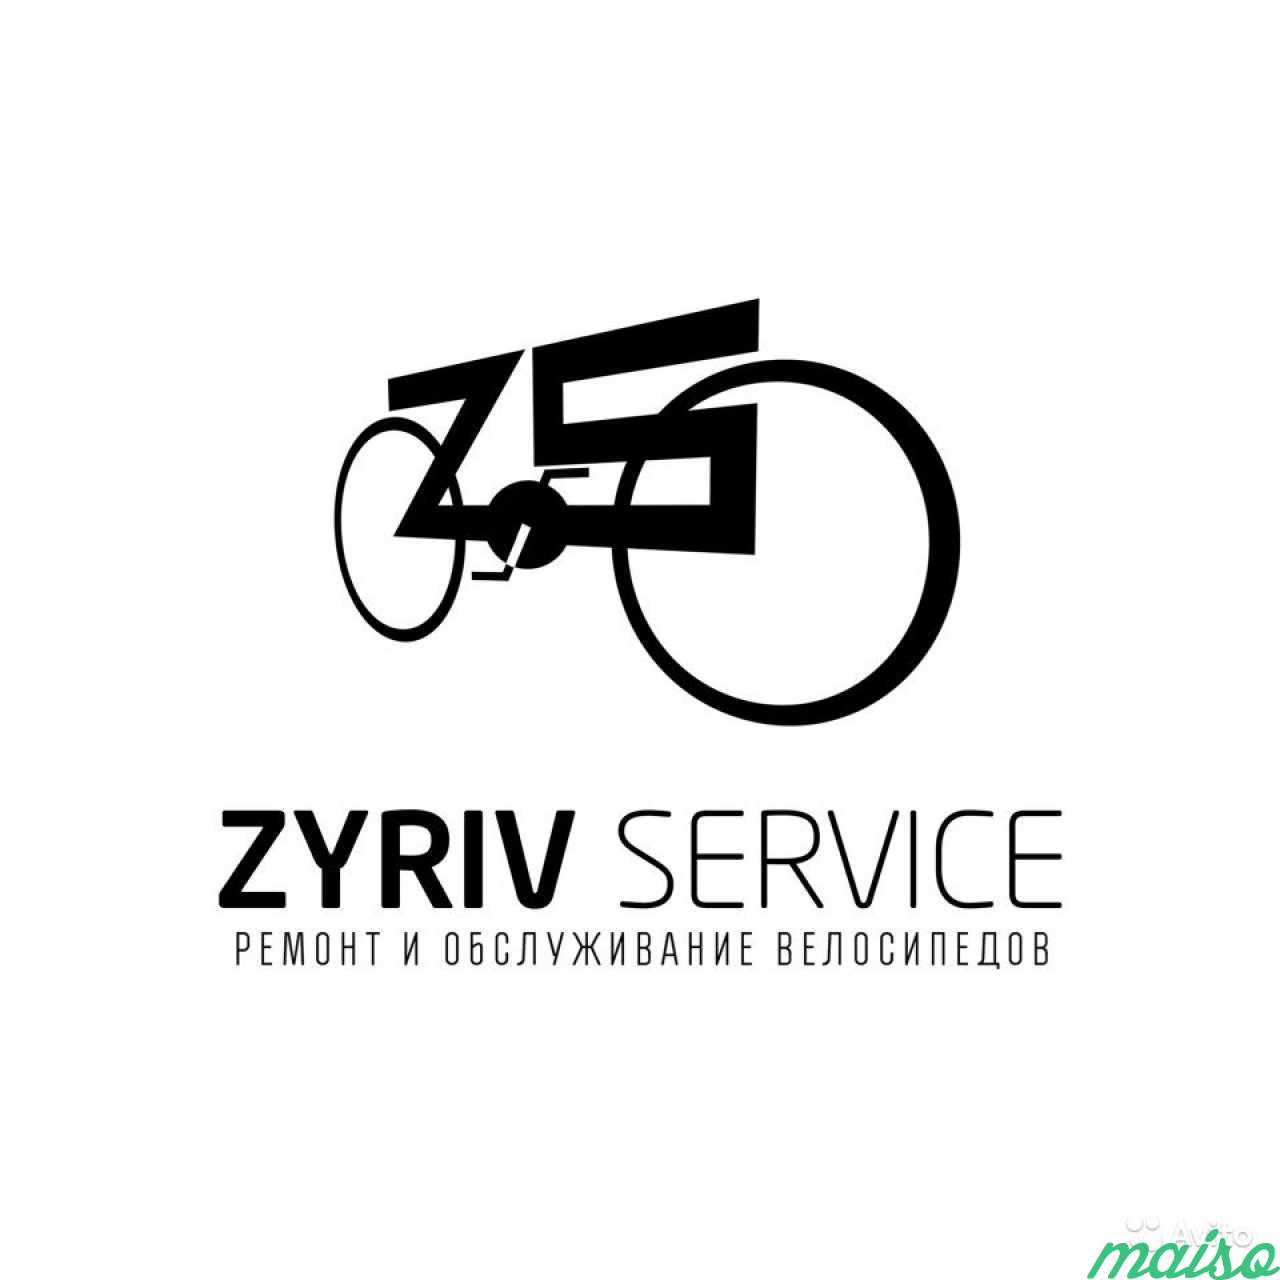 Велоремонт - Zyriv-Service в Санкт-Петербурге. Фото 1